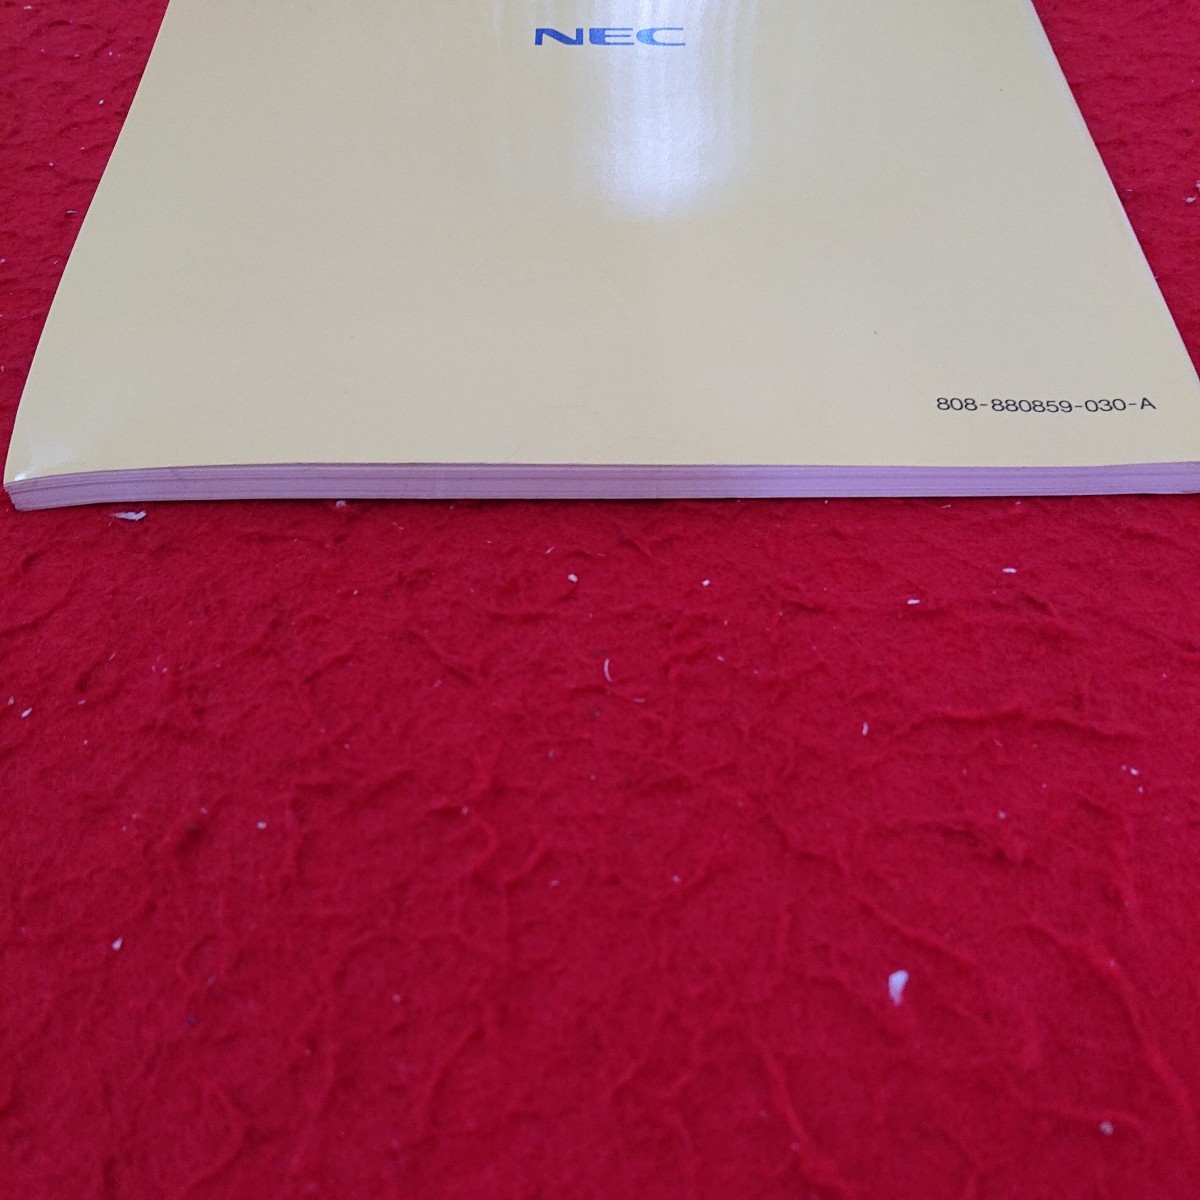 f-453 шея персональный компьютер PC-9800 серии MS-DOS 5.0A-H Quick manual выпуск день неизвестен commando p long pto и т.п. *9